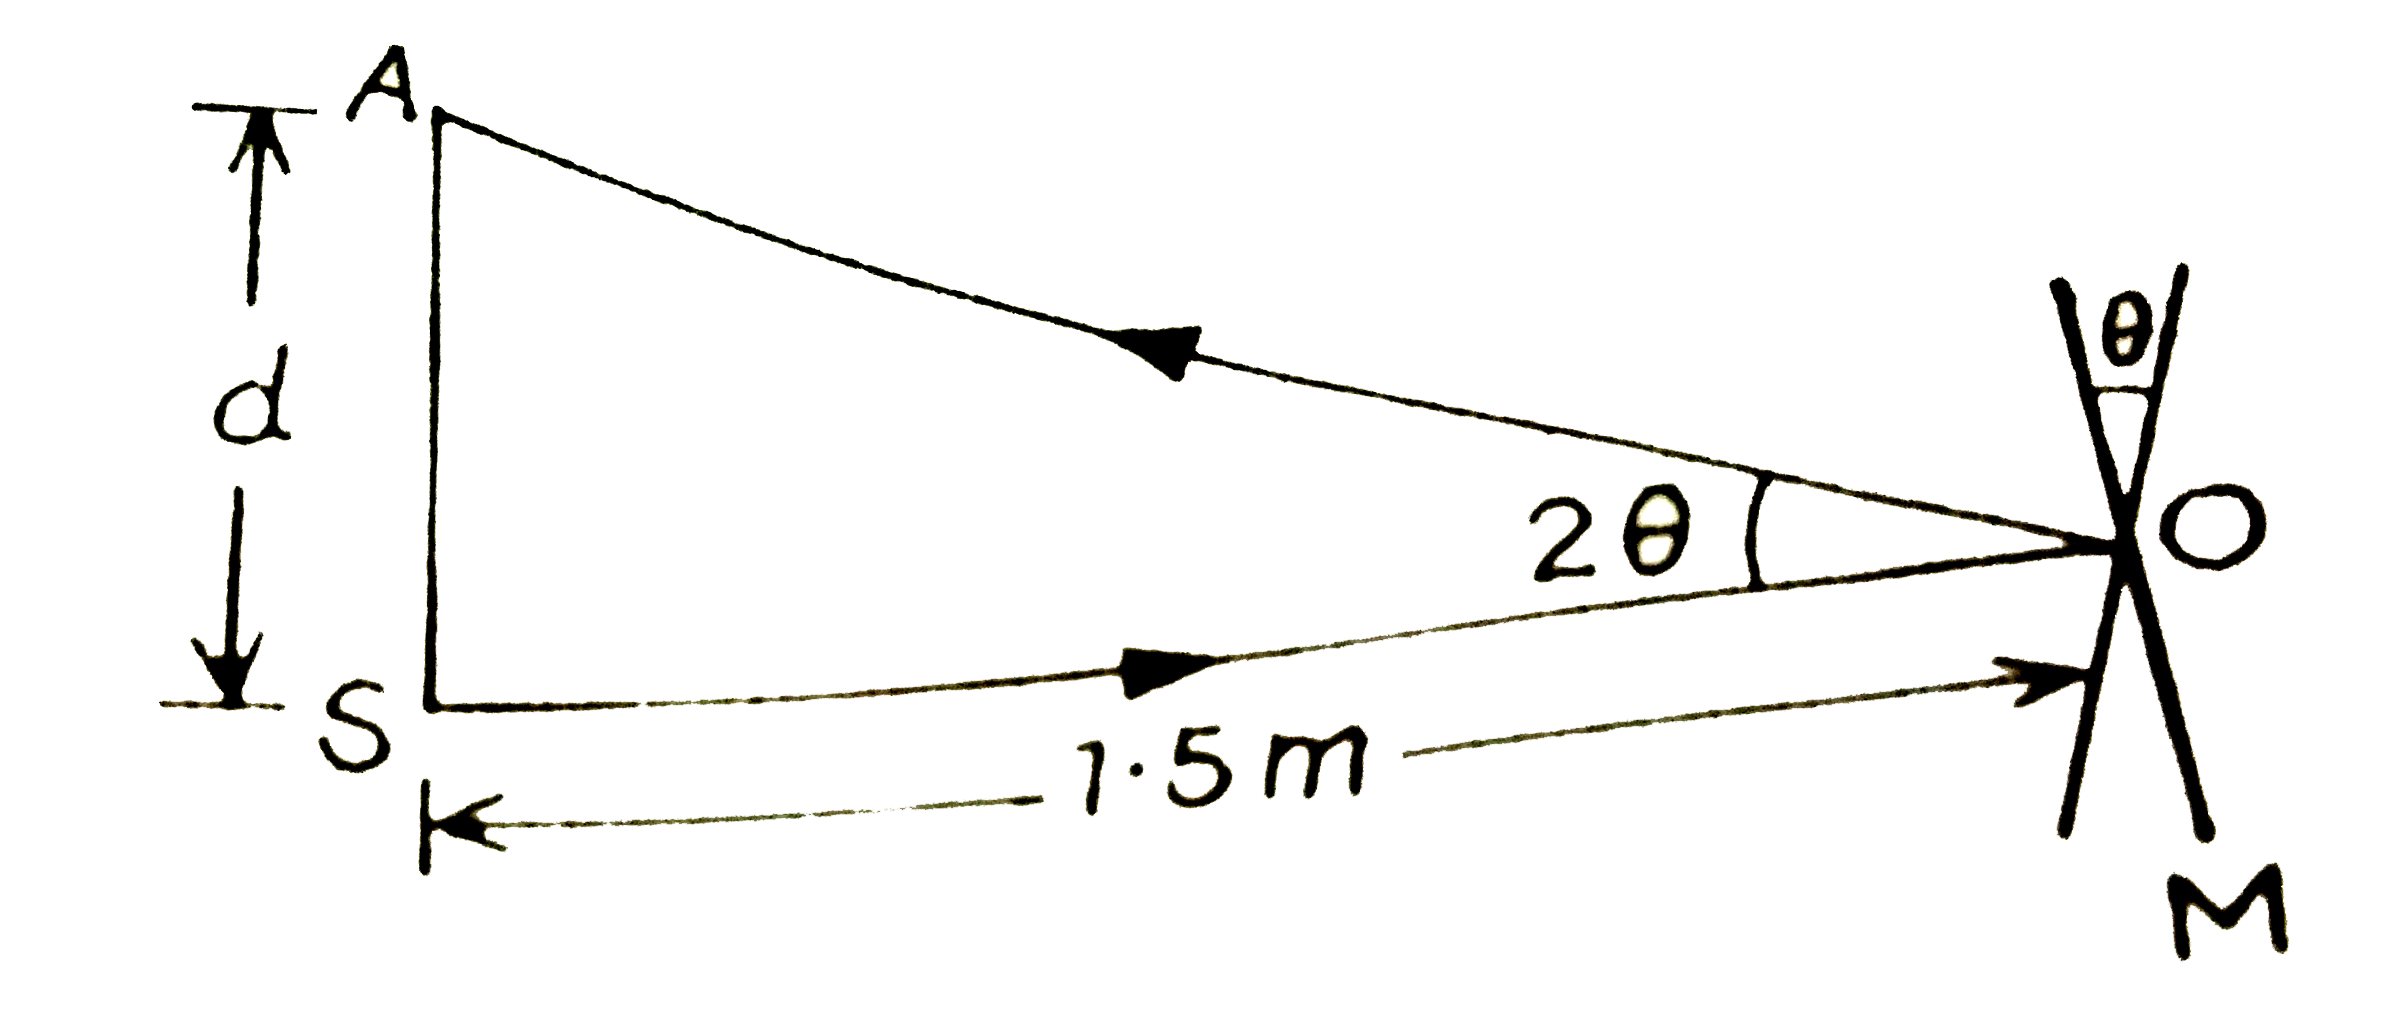 किसी गैल्वेनोमीटर की कुंडली से जुड़े समतल दर्पण पर लंबवत आपतित प्रकाश (चित्र ), दर्पण से टकराकर अपना पथ पुनः अनुरेखित करता है । गैल्वेनोमीटर की कुंडली में प्रवाहित कोई धारा दर्पण में 3.5^(@) का परिक्षेपण उत्पन्न करती है । दर्पण के सामने  1.5 मीटर दूरी पर रखे परदे पर प्रकाश के परावर्ती चिह्न में कितना विस्थापन होगा ?